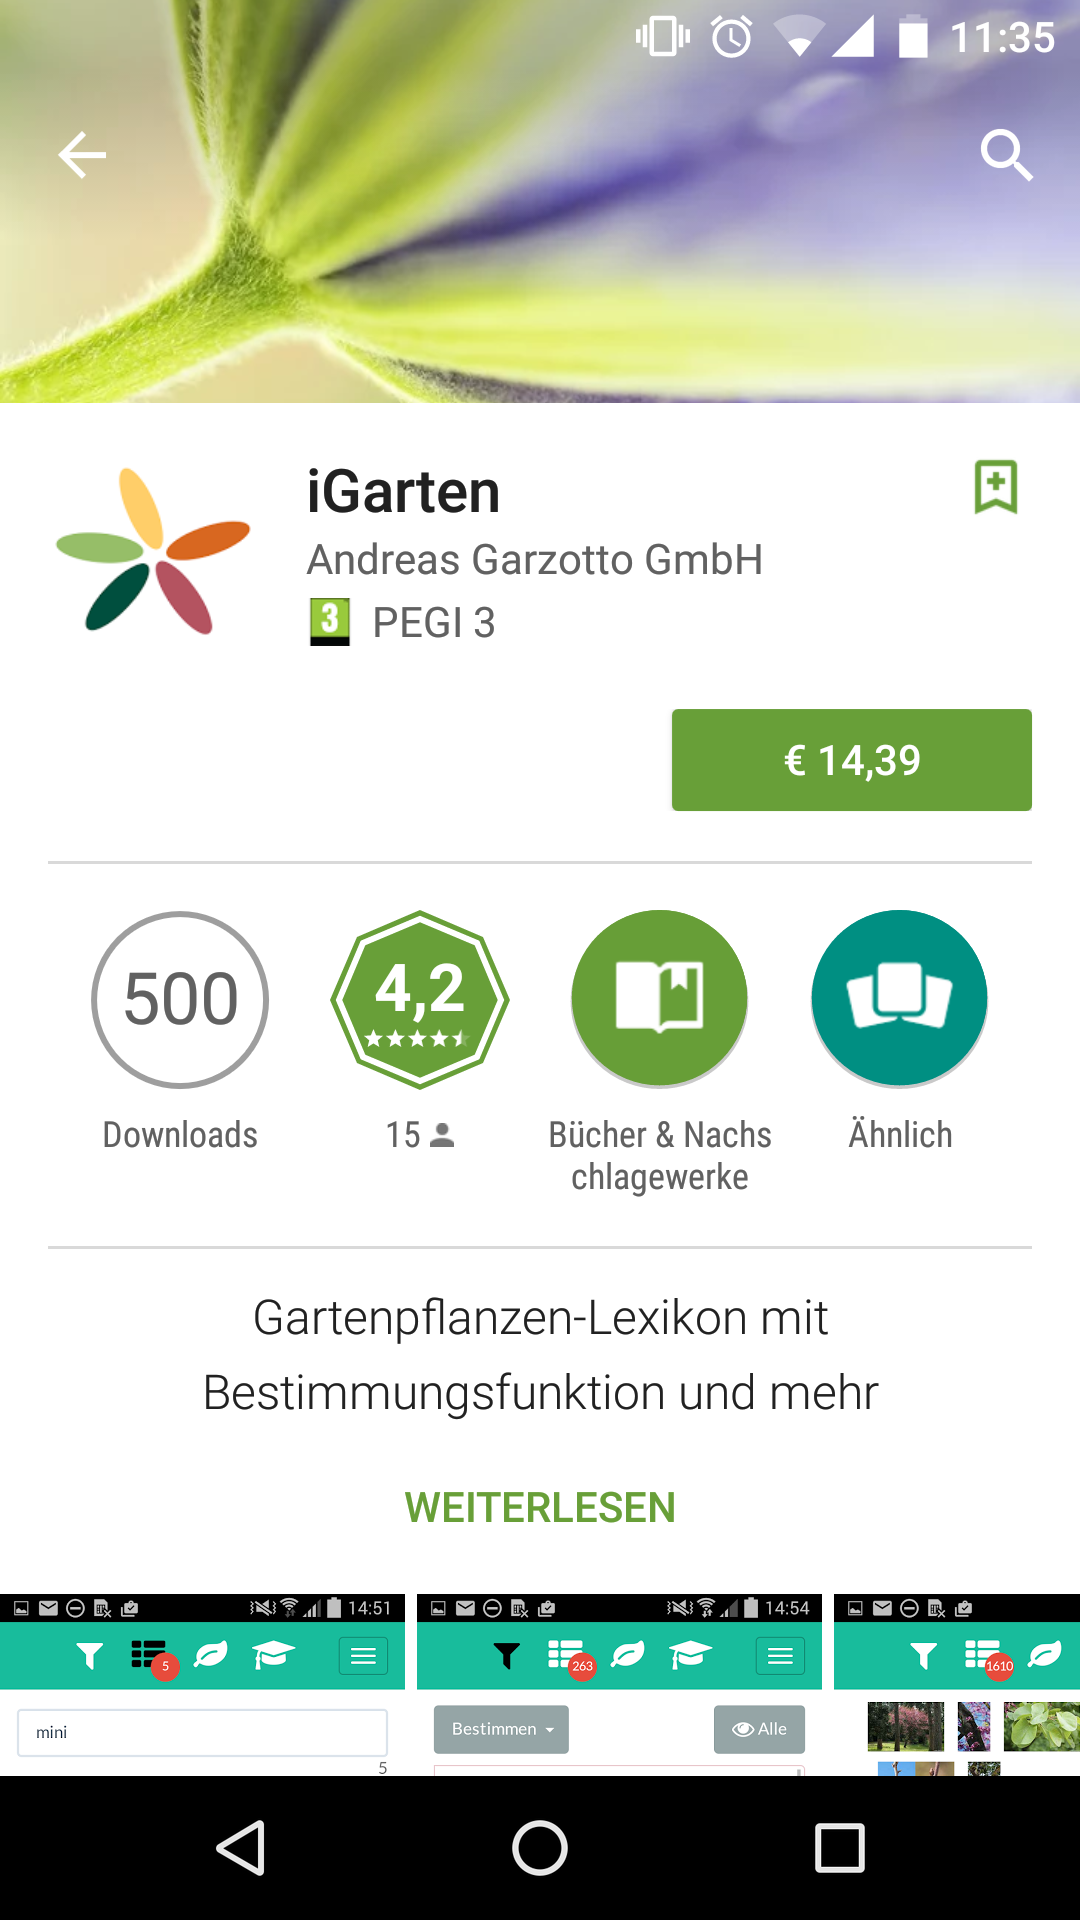 iGarten: Gartenpflanzen-Lexikon